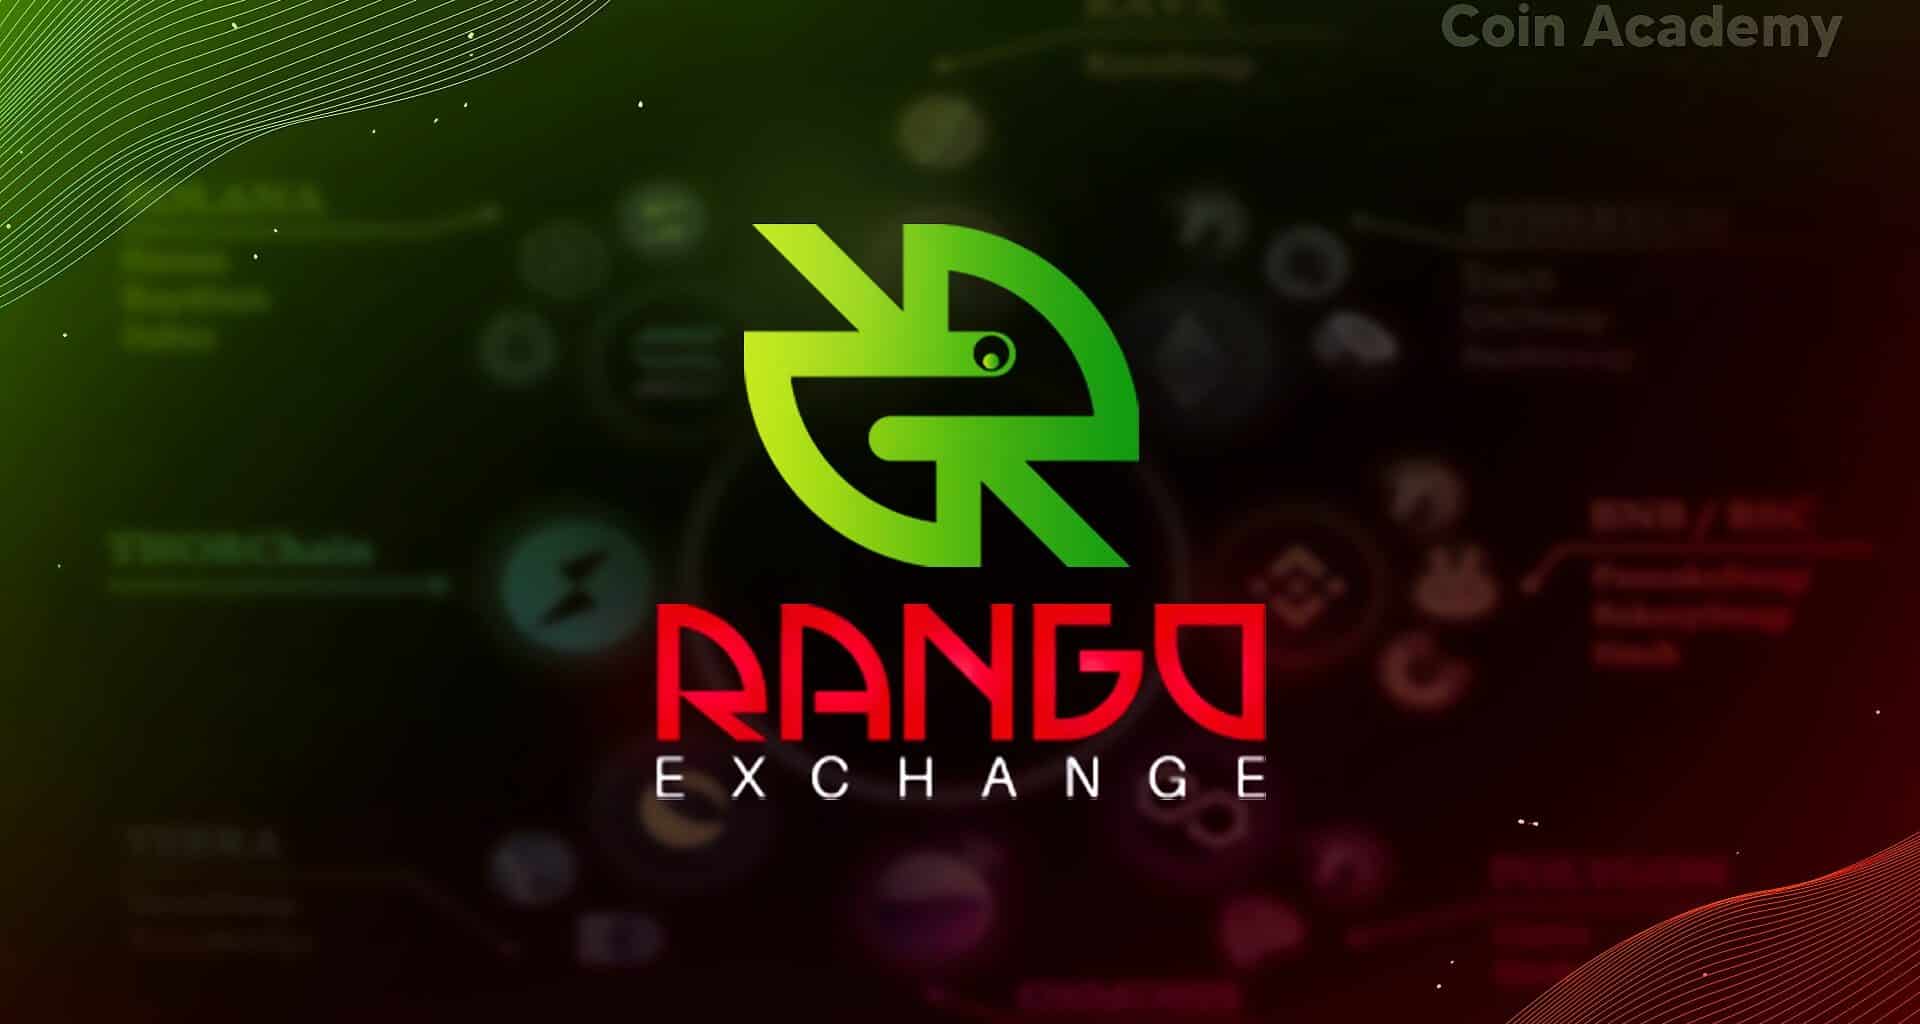 Rango exchange